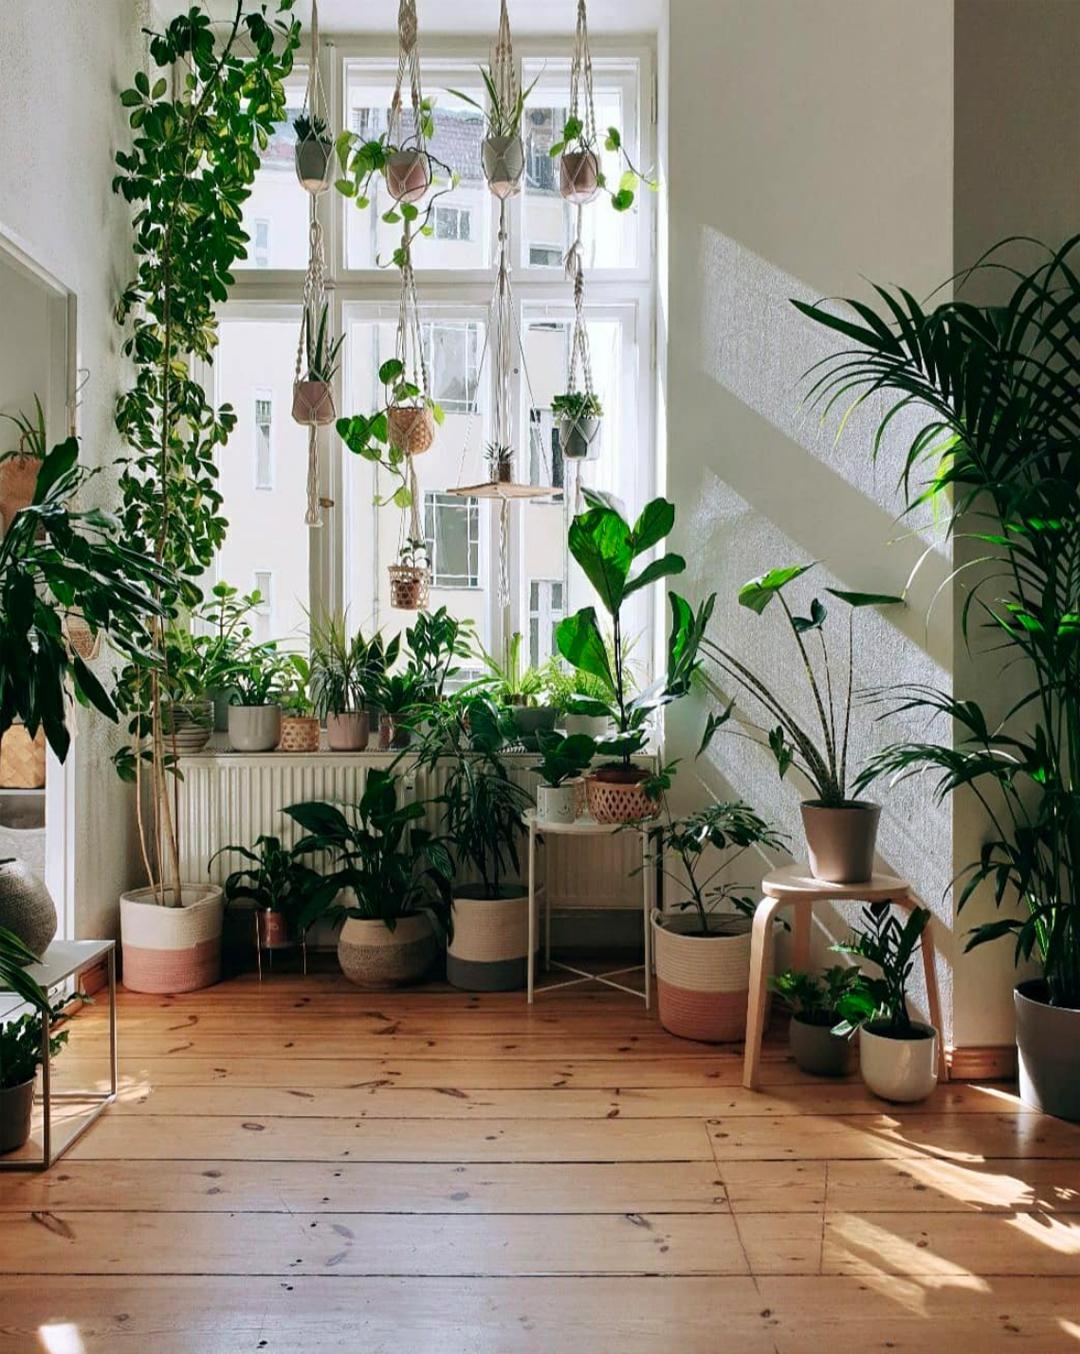 Altbaufenster trifft Pflanzen #urbanjungle 